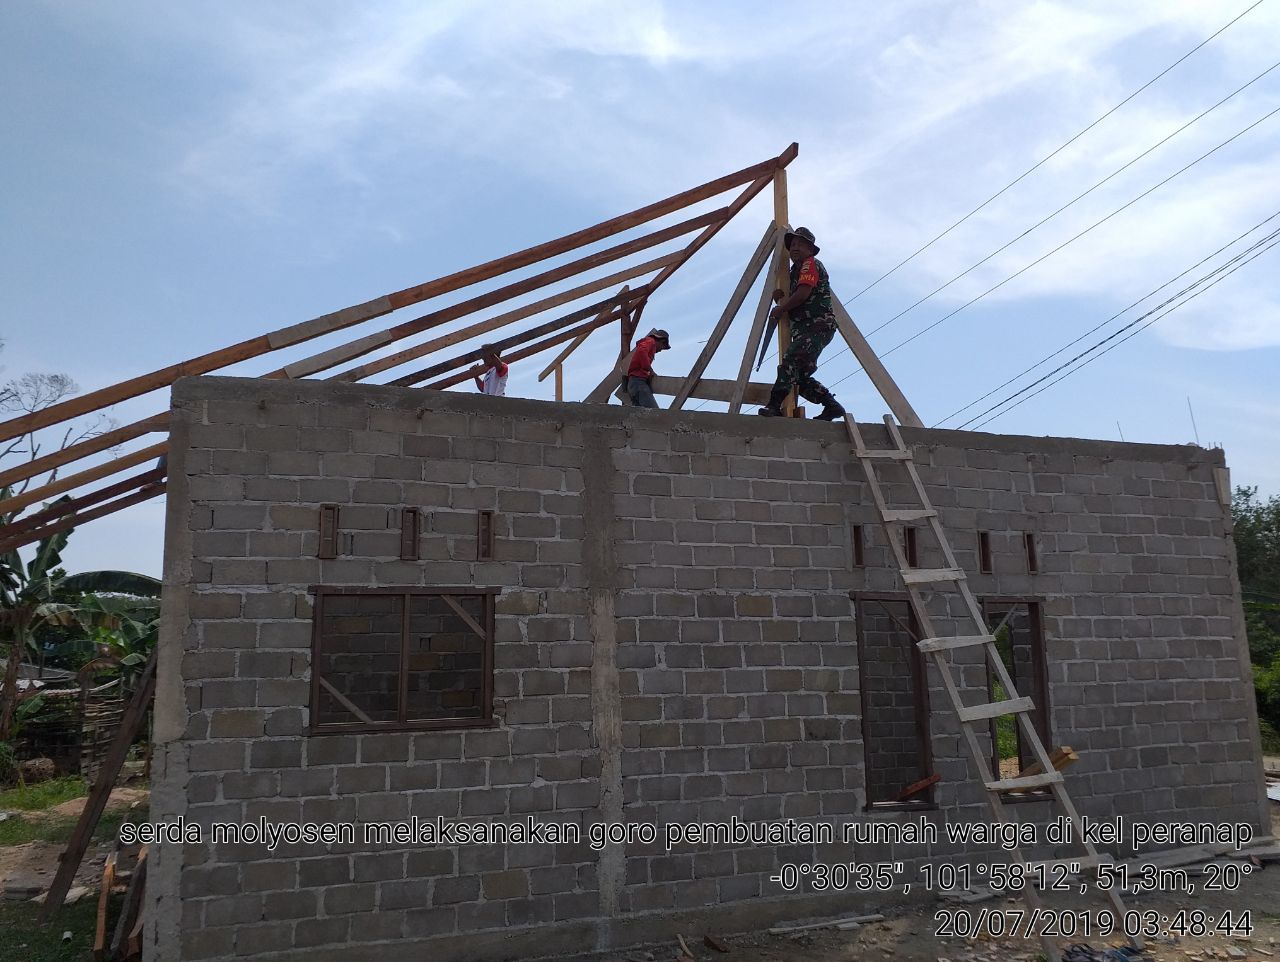 Kunjungi Warga Babinsa Mulyonsen Bantu pembangunan Rumah warga